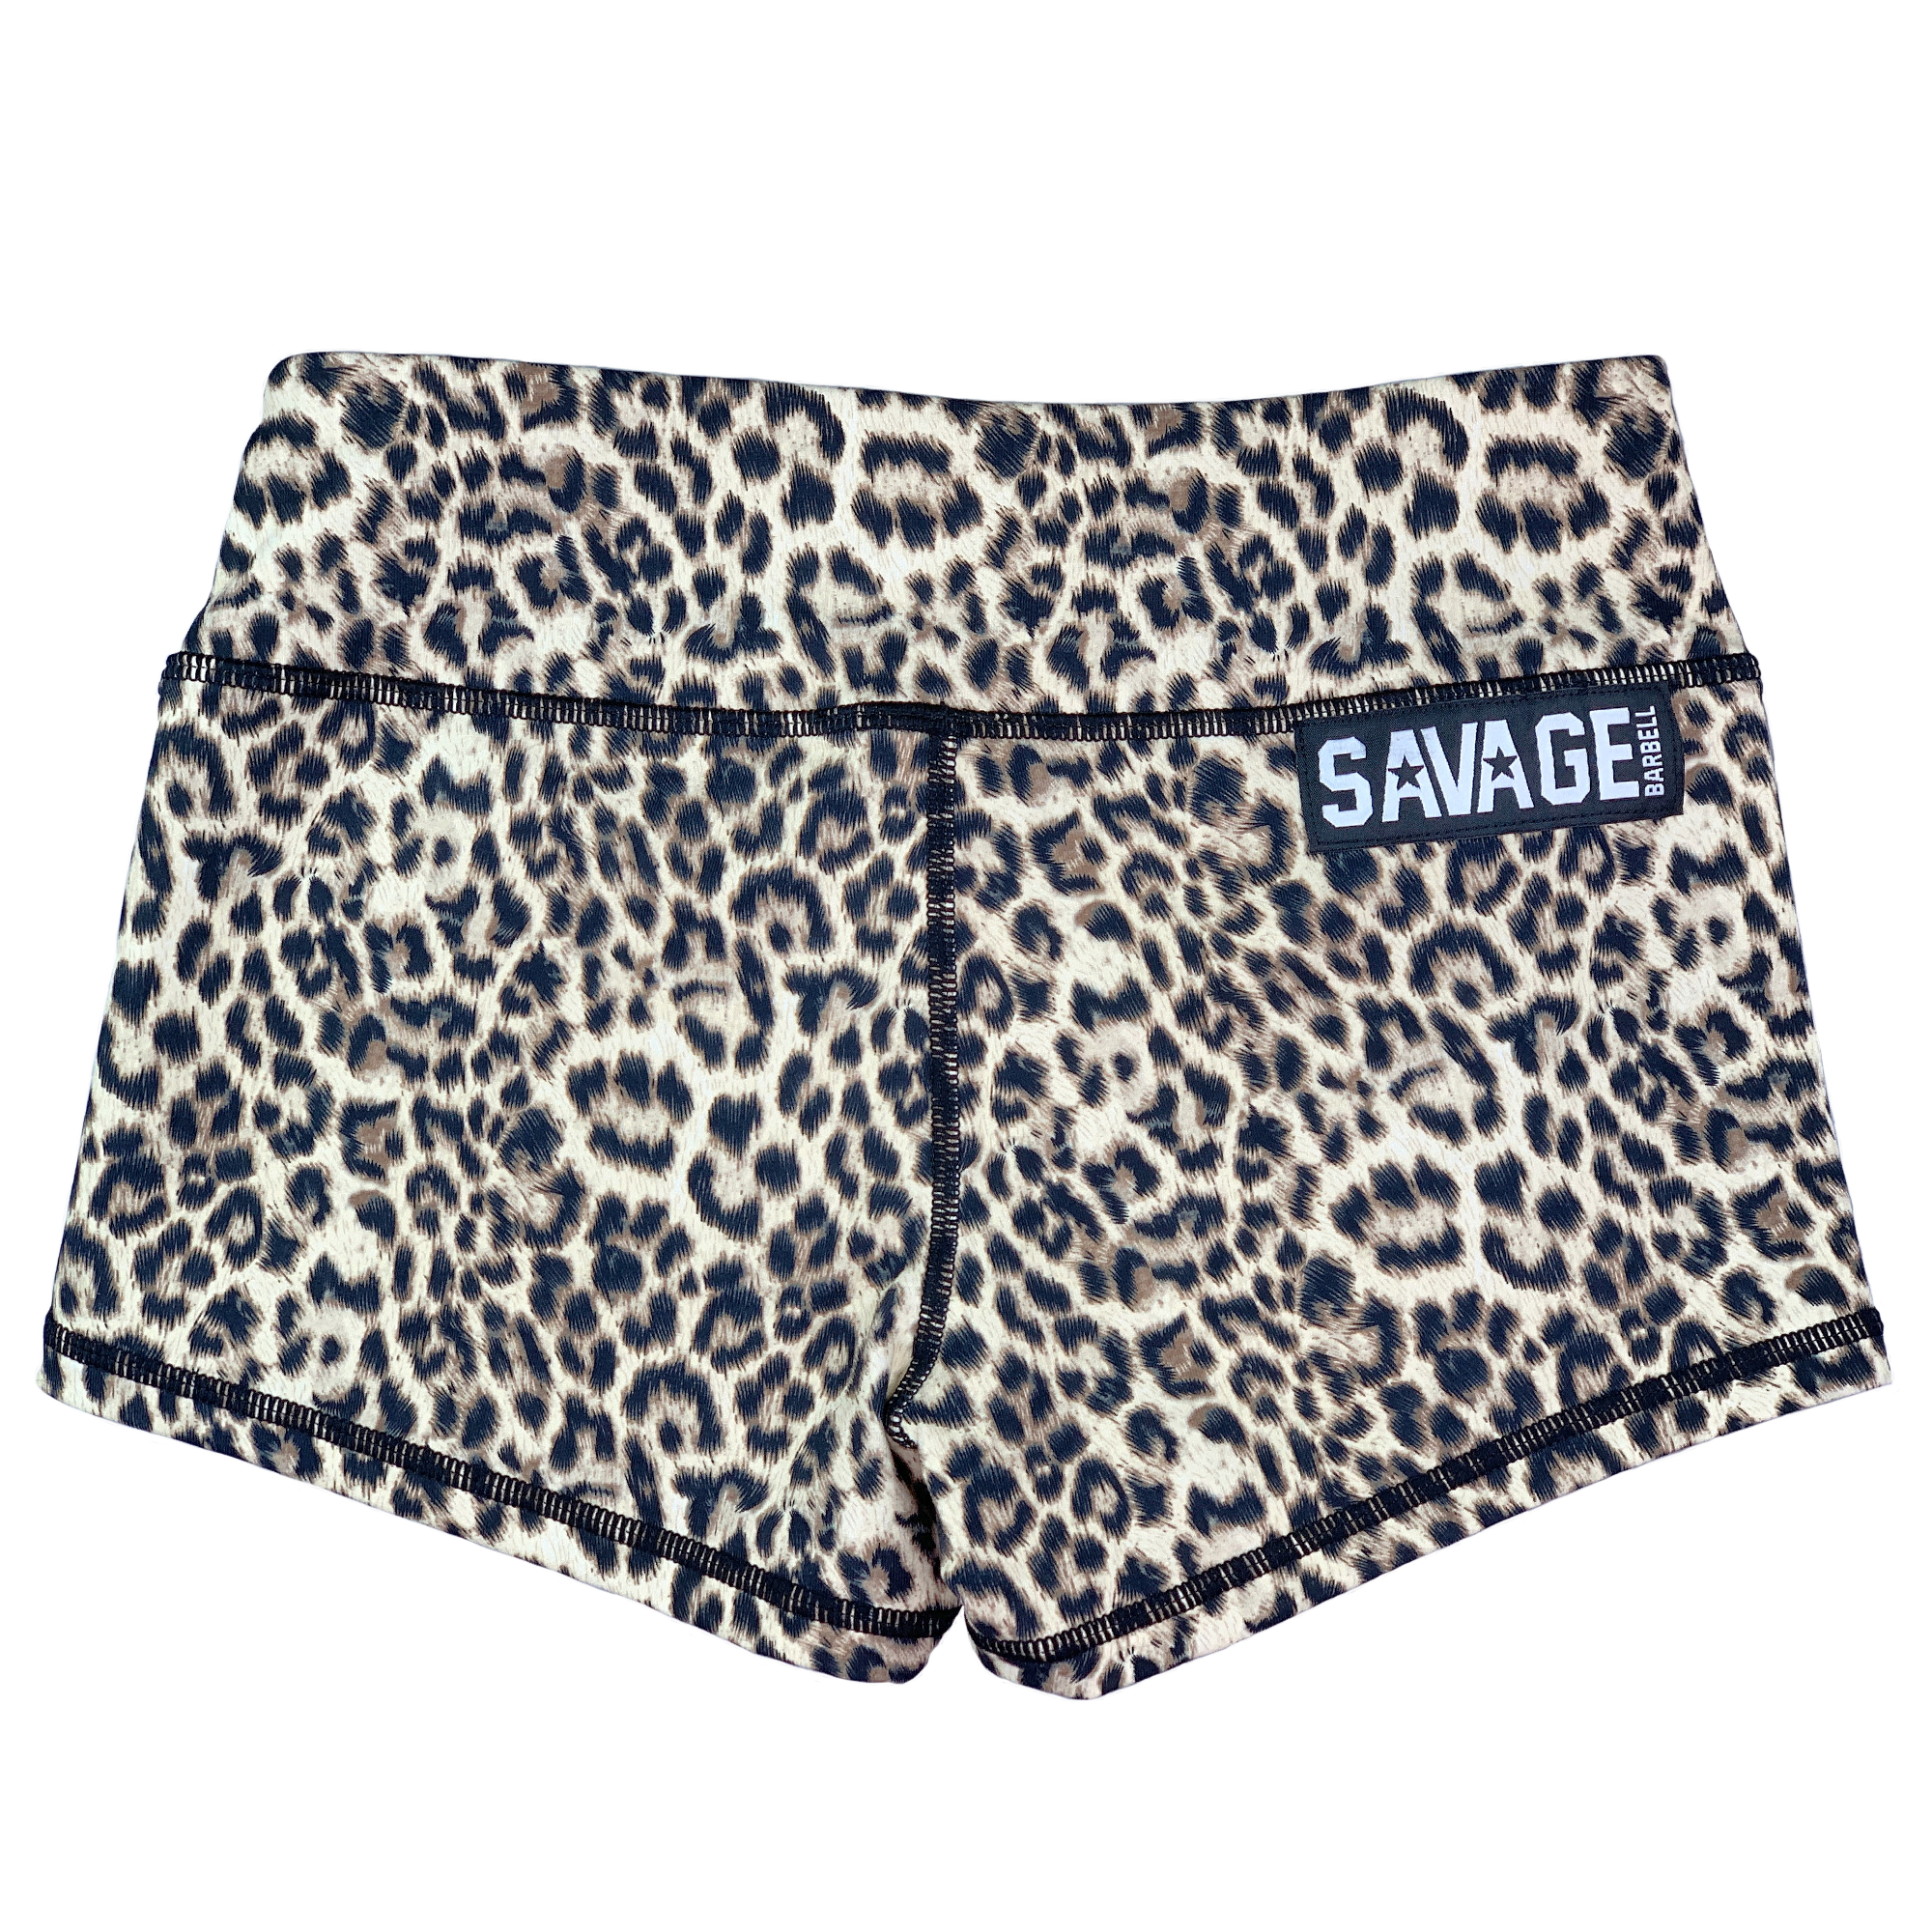 Cheetah Booty Shorts